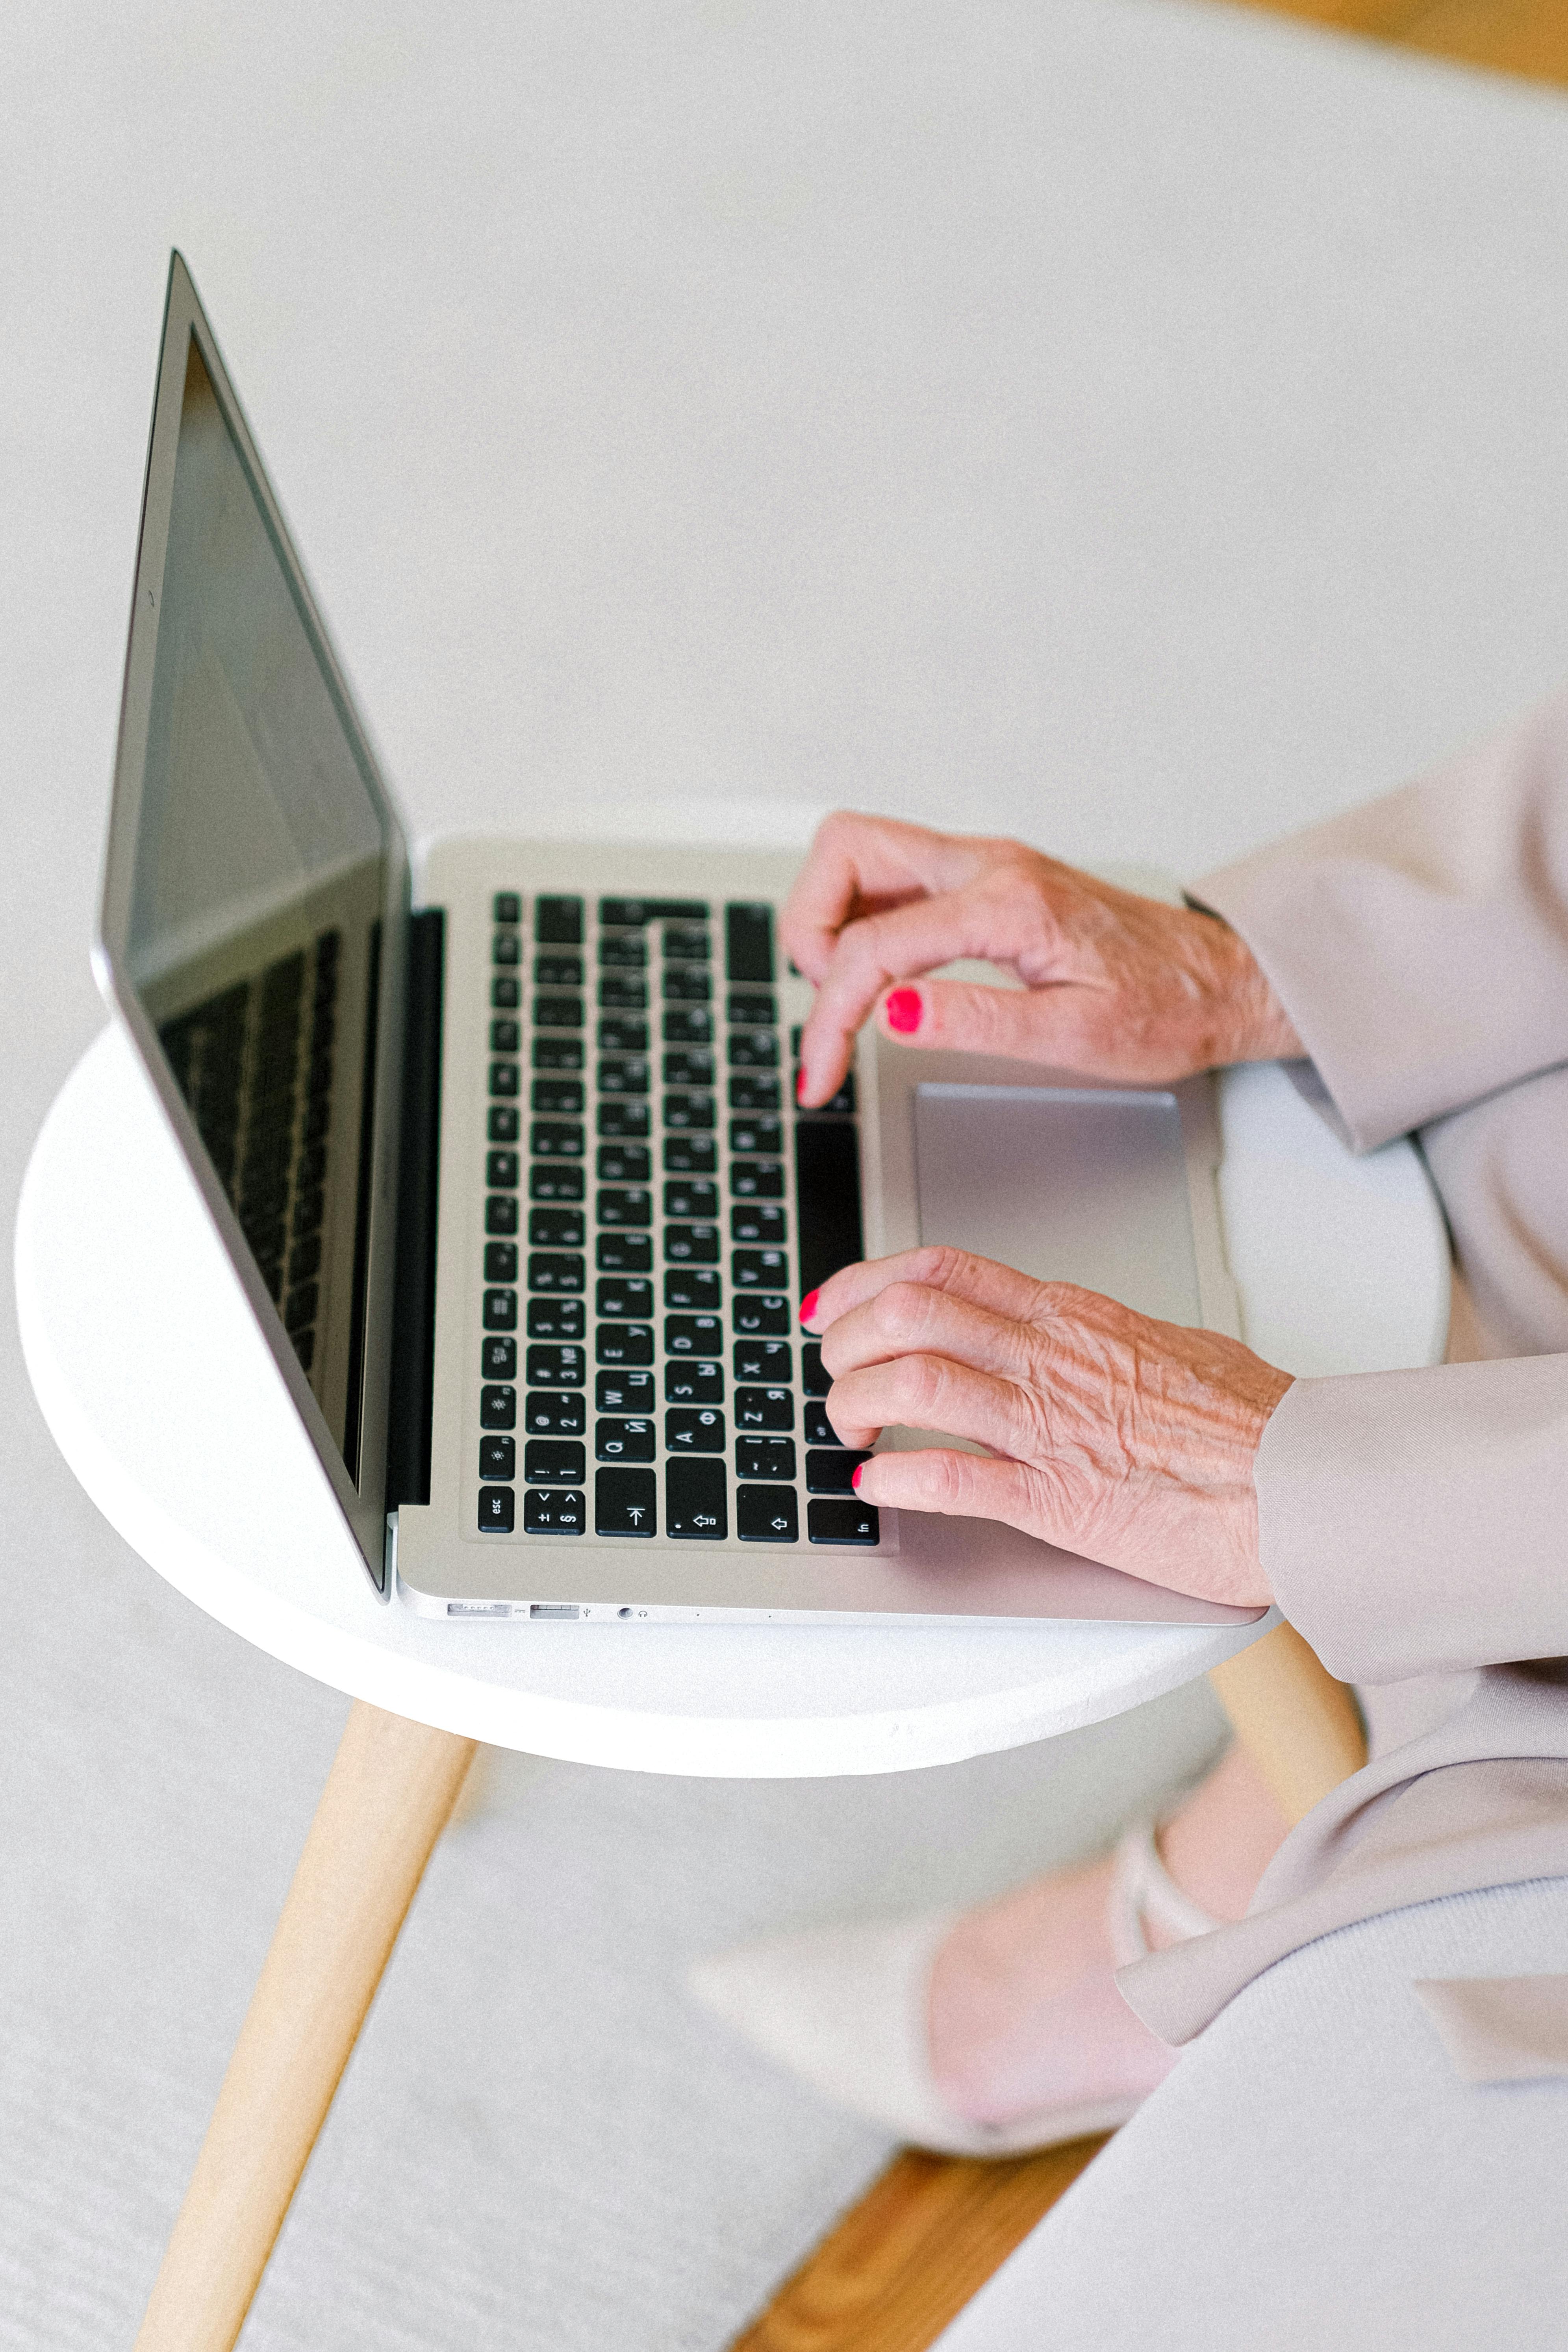 Gran, engrossed in her laptop | Source: Pexels